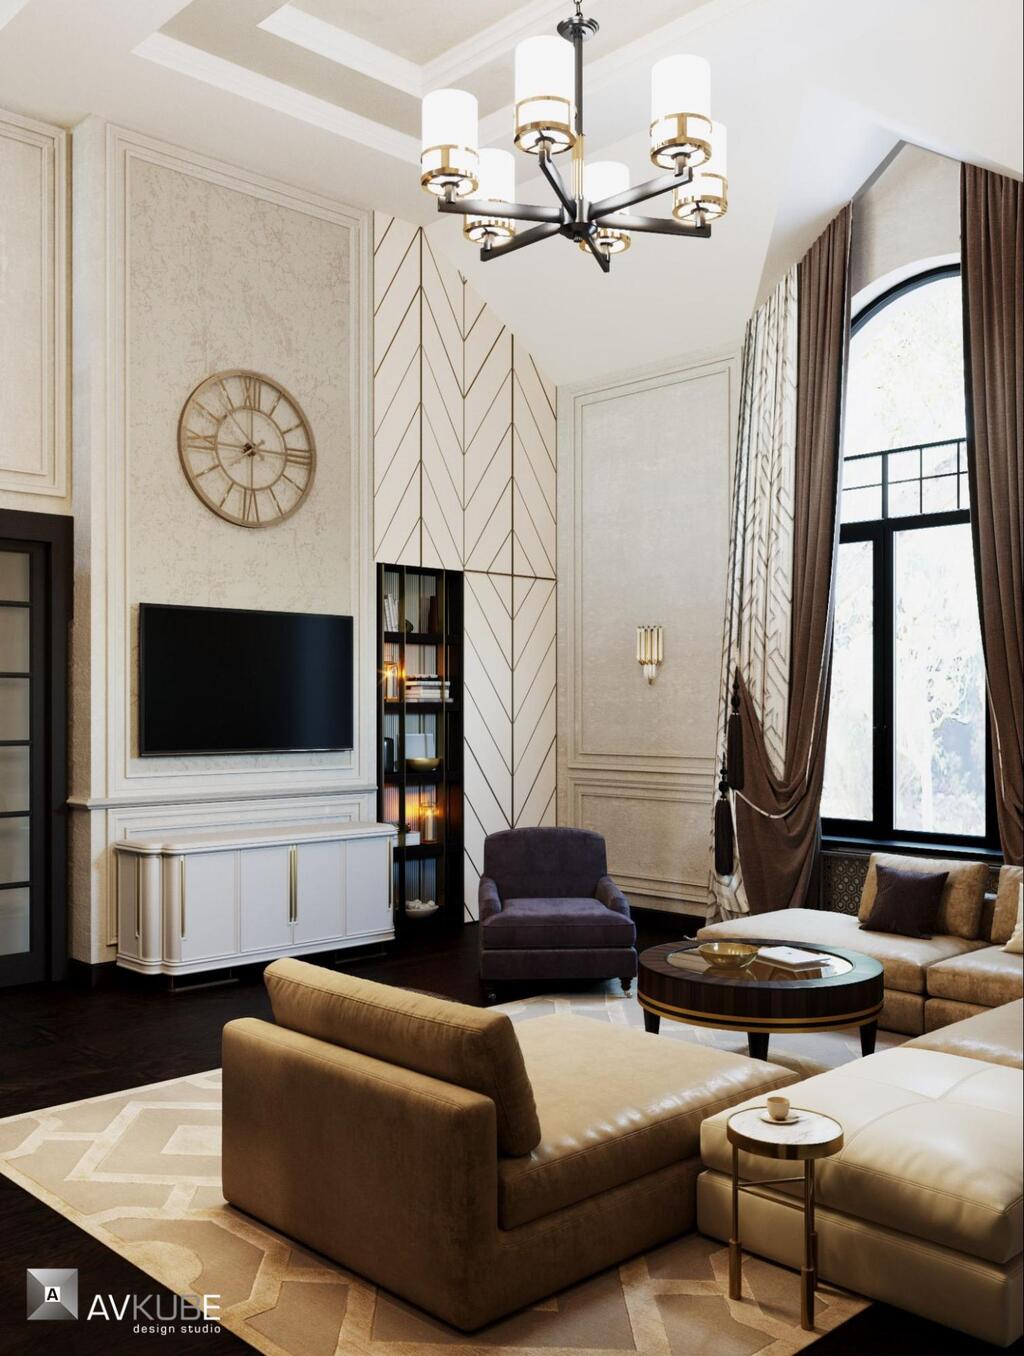 На фото — гостиная в современном классическом стиле, дизайн проект «АвКубе»